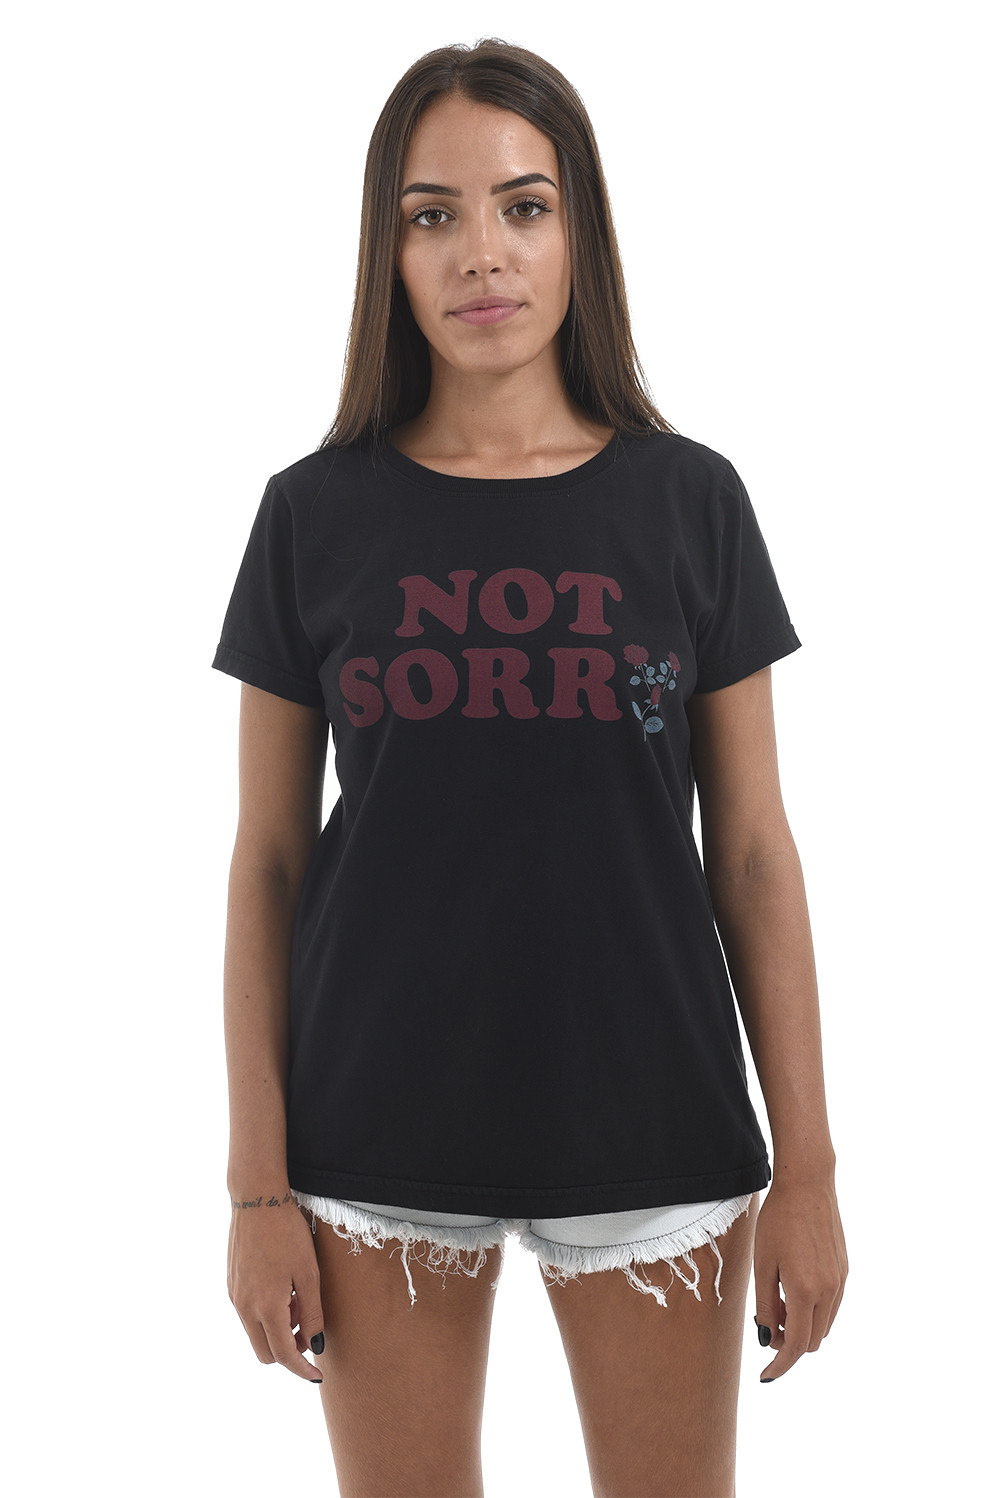 Camiseta Korova Girl Power Not Sorry